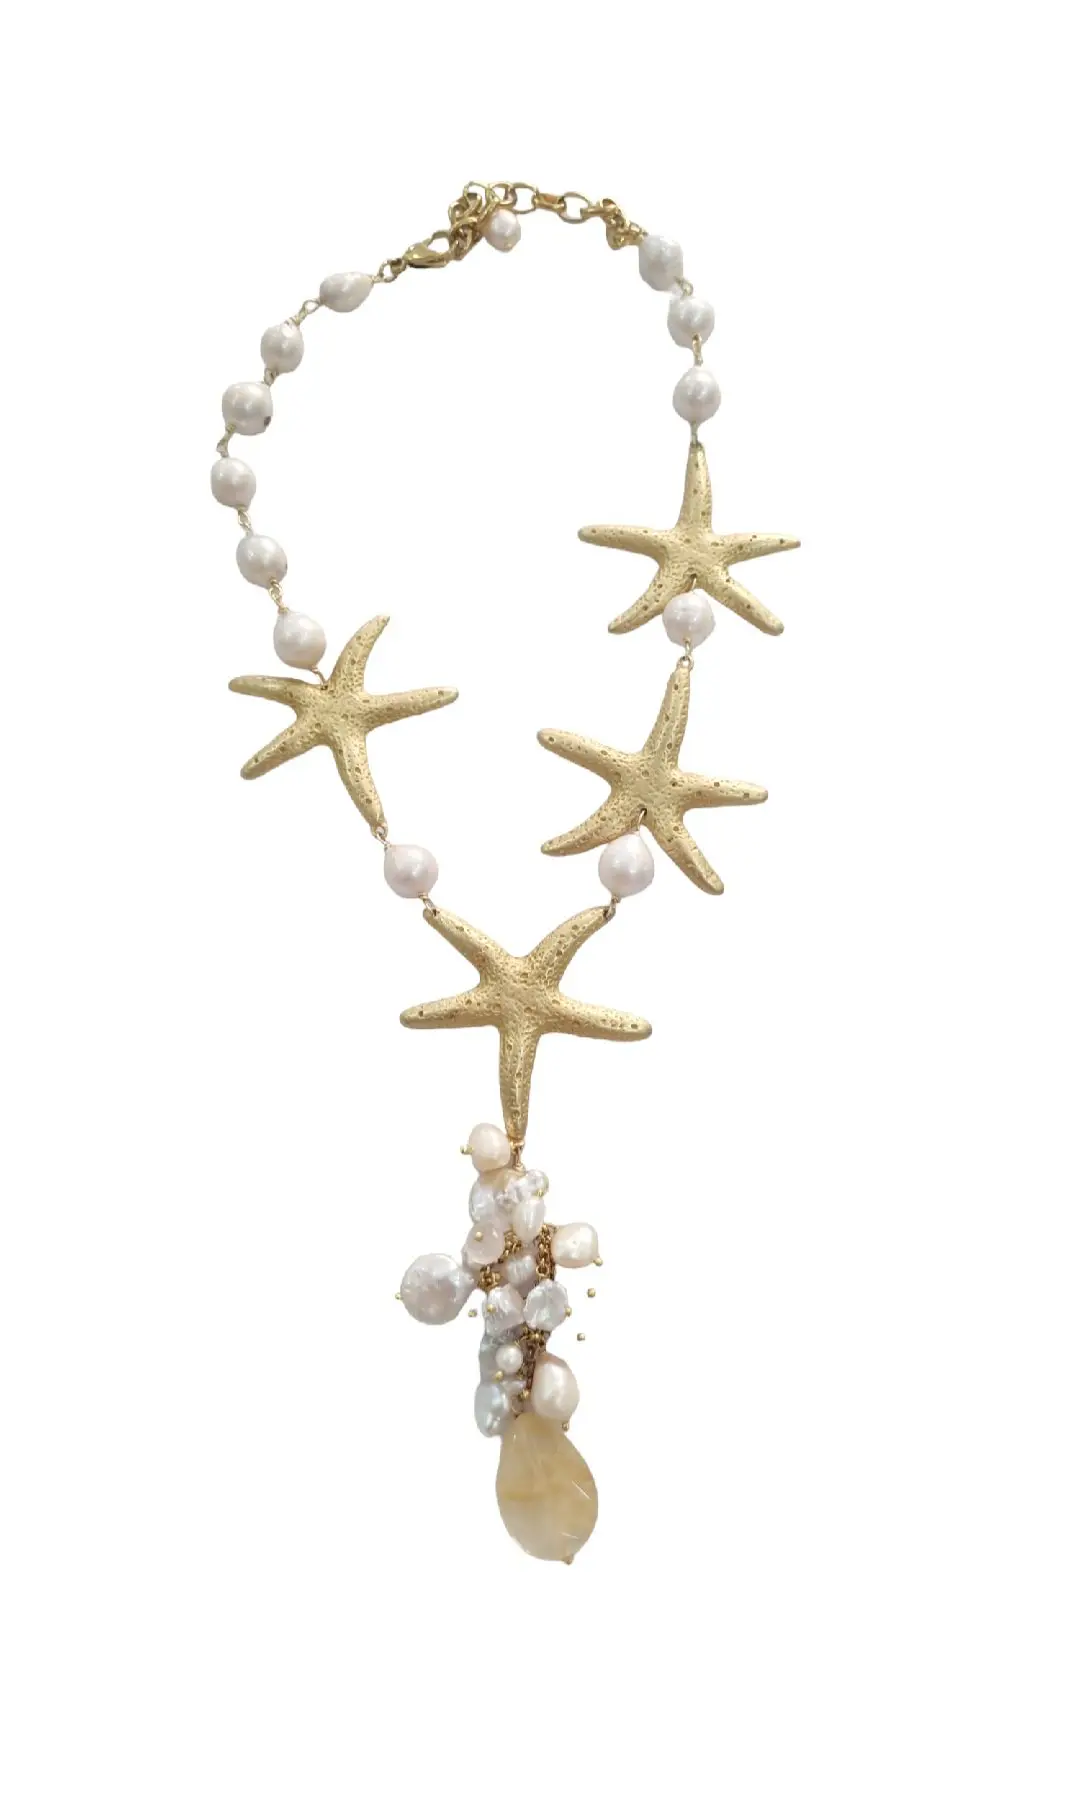 Collana girocollo con pendente realizzata artigianalmente con stelle in ottone, perle scaramazze e quarzi. Lunghezza girocollo 55 cm Lunghezza pendente 12cm